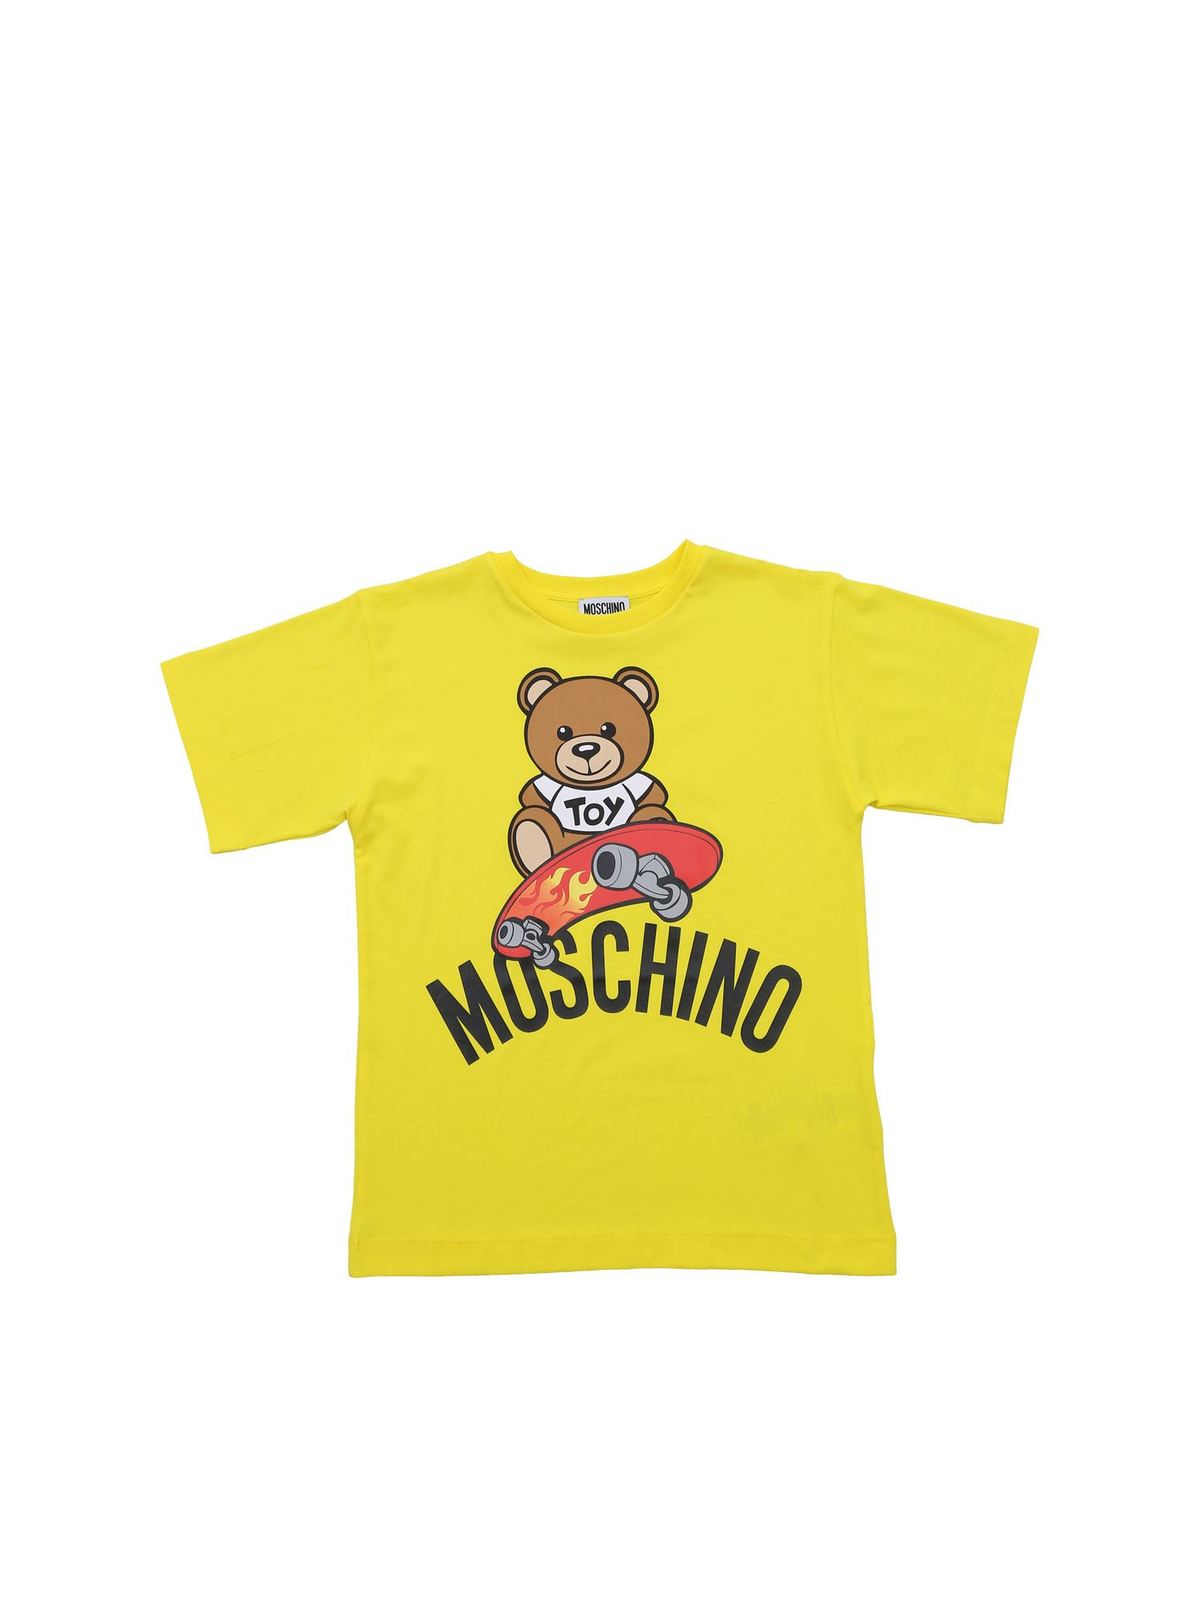 yellow moschino shirt